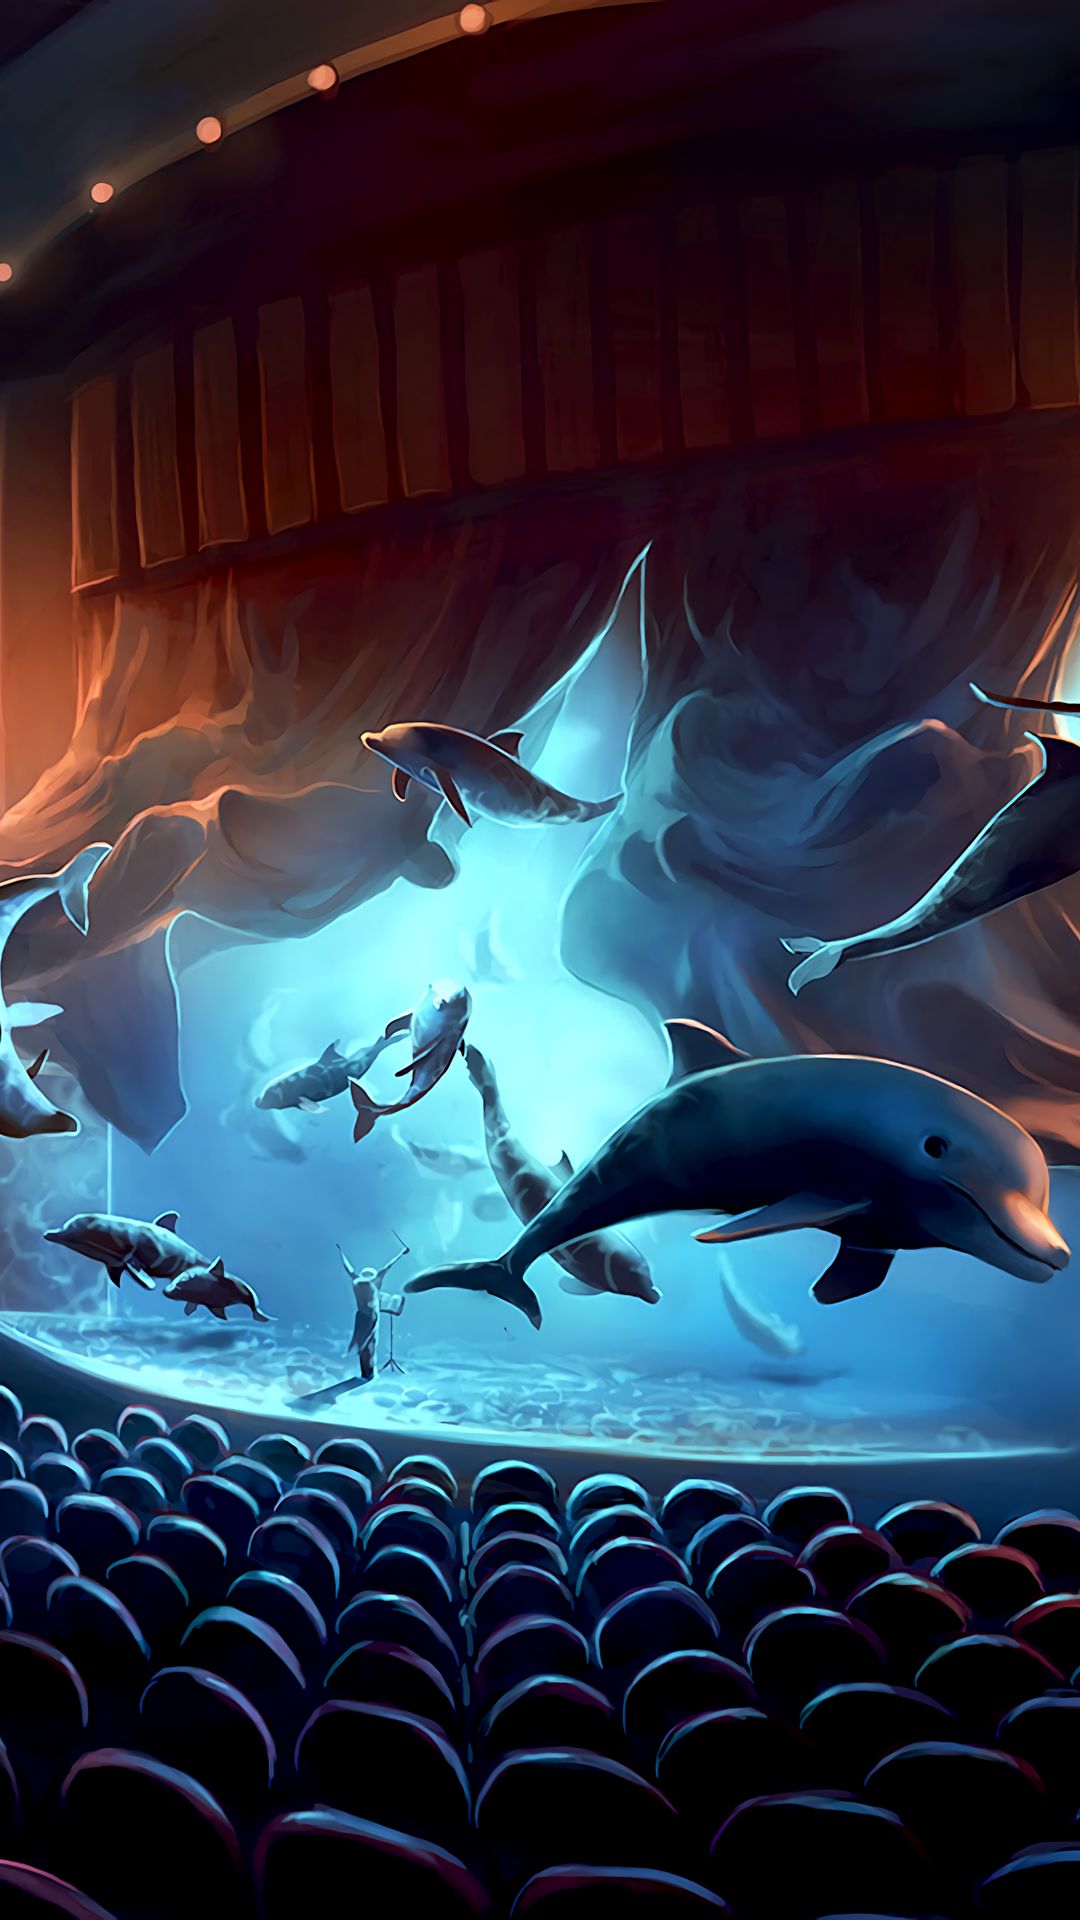 cá heo: Những chú cá heo đáng yêu và thông minh luôn là niềm yêu thích của mọi người. Hãy thưởng thức các hình ảnh liên quan để theo dõi cuộc sống của các chú cá heo trong tự nhiên, cùng những pha nhảy vô cùng duyên dáng và tài năng khiến ai nhìn thấy cũng phải thích thú.